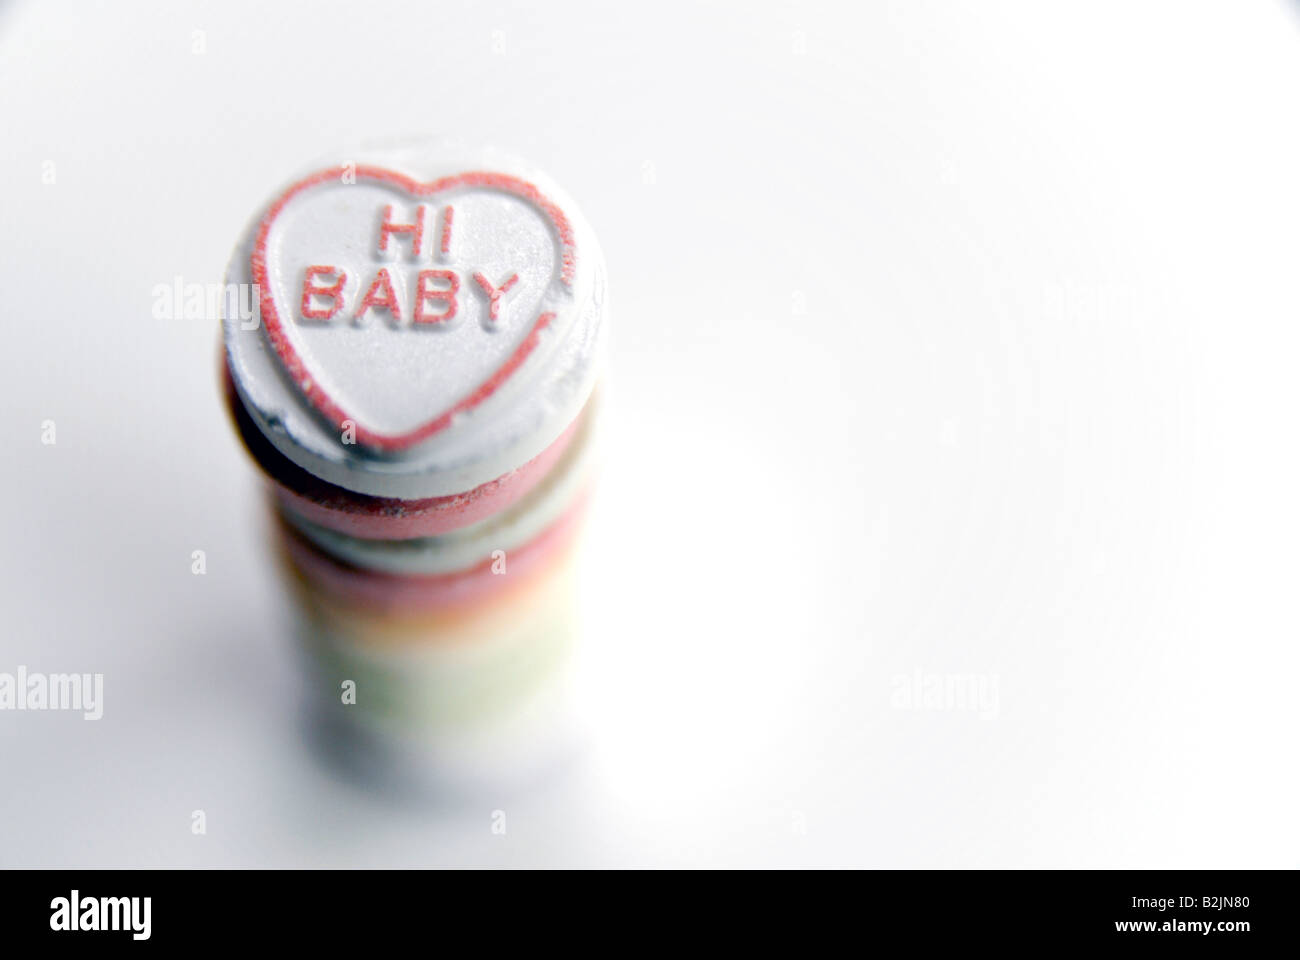 'Bonjour' Bébé intitulé sur un tas de bonbons de chaleur d'amour Banque D'Images